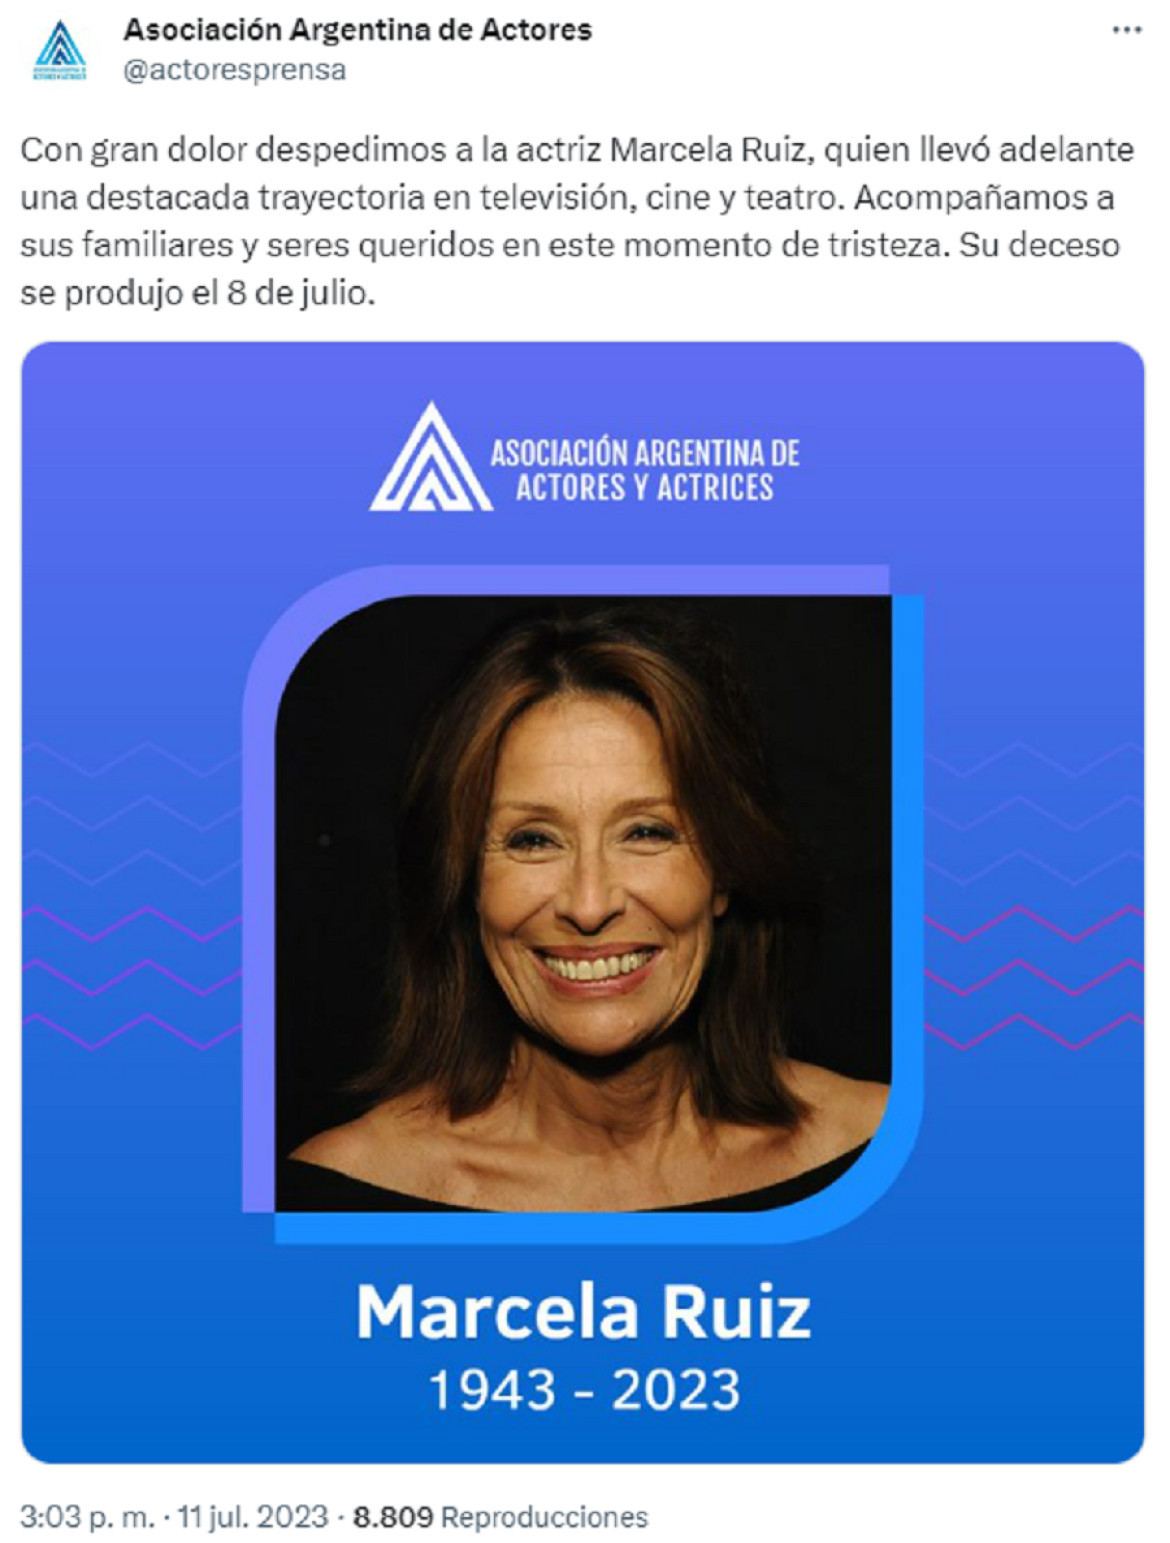 El comunicado de la Asociación Argentina de Actores. Foto: Twitter.